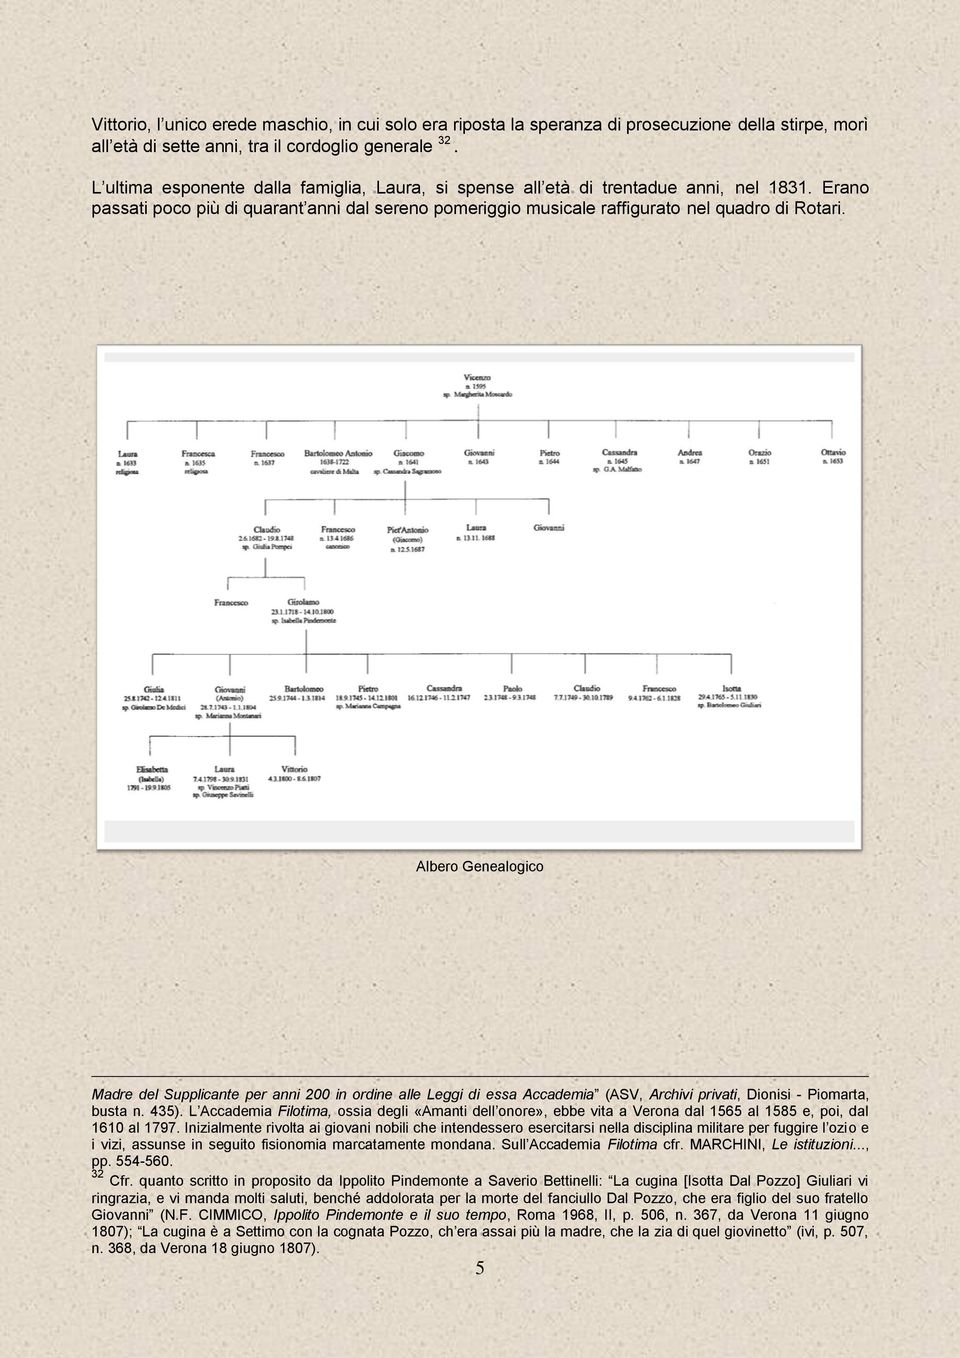 Albero Genealogico Madre del Supplicante per anni 200 in ordine alle Leggi di essa Accademia (ASV, Archivi privati, Dionisi - Piomarta, busta n. 435).